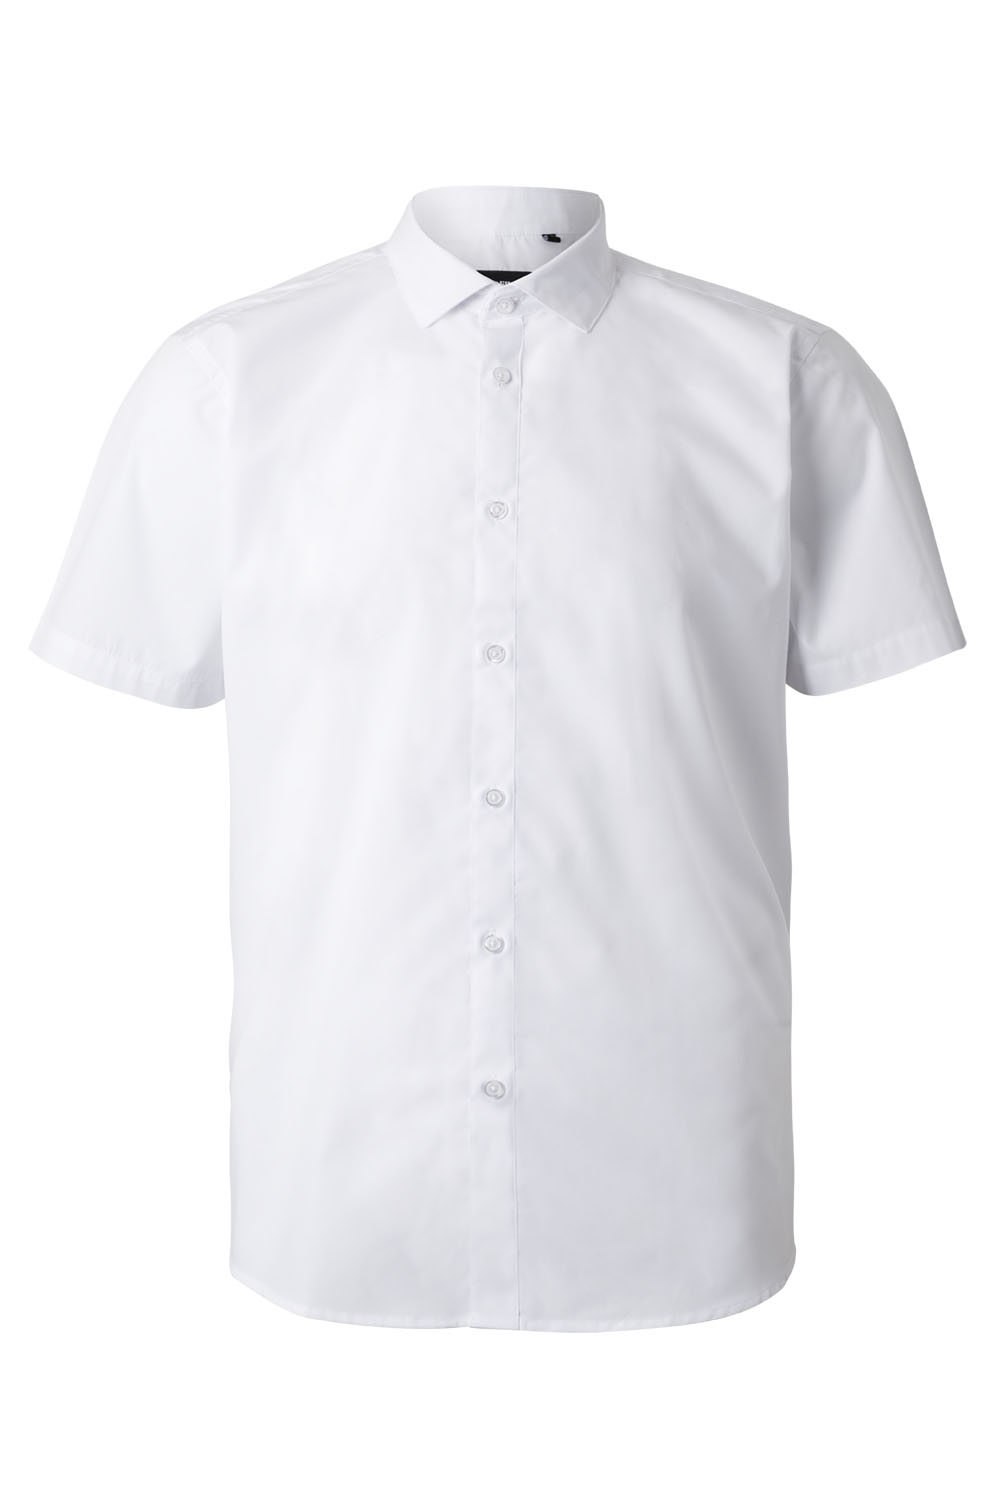 VELILLA GROUP EUROPE S.L.U. Pánska čašnícka košeľa krátky rukáv- biela  XL